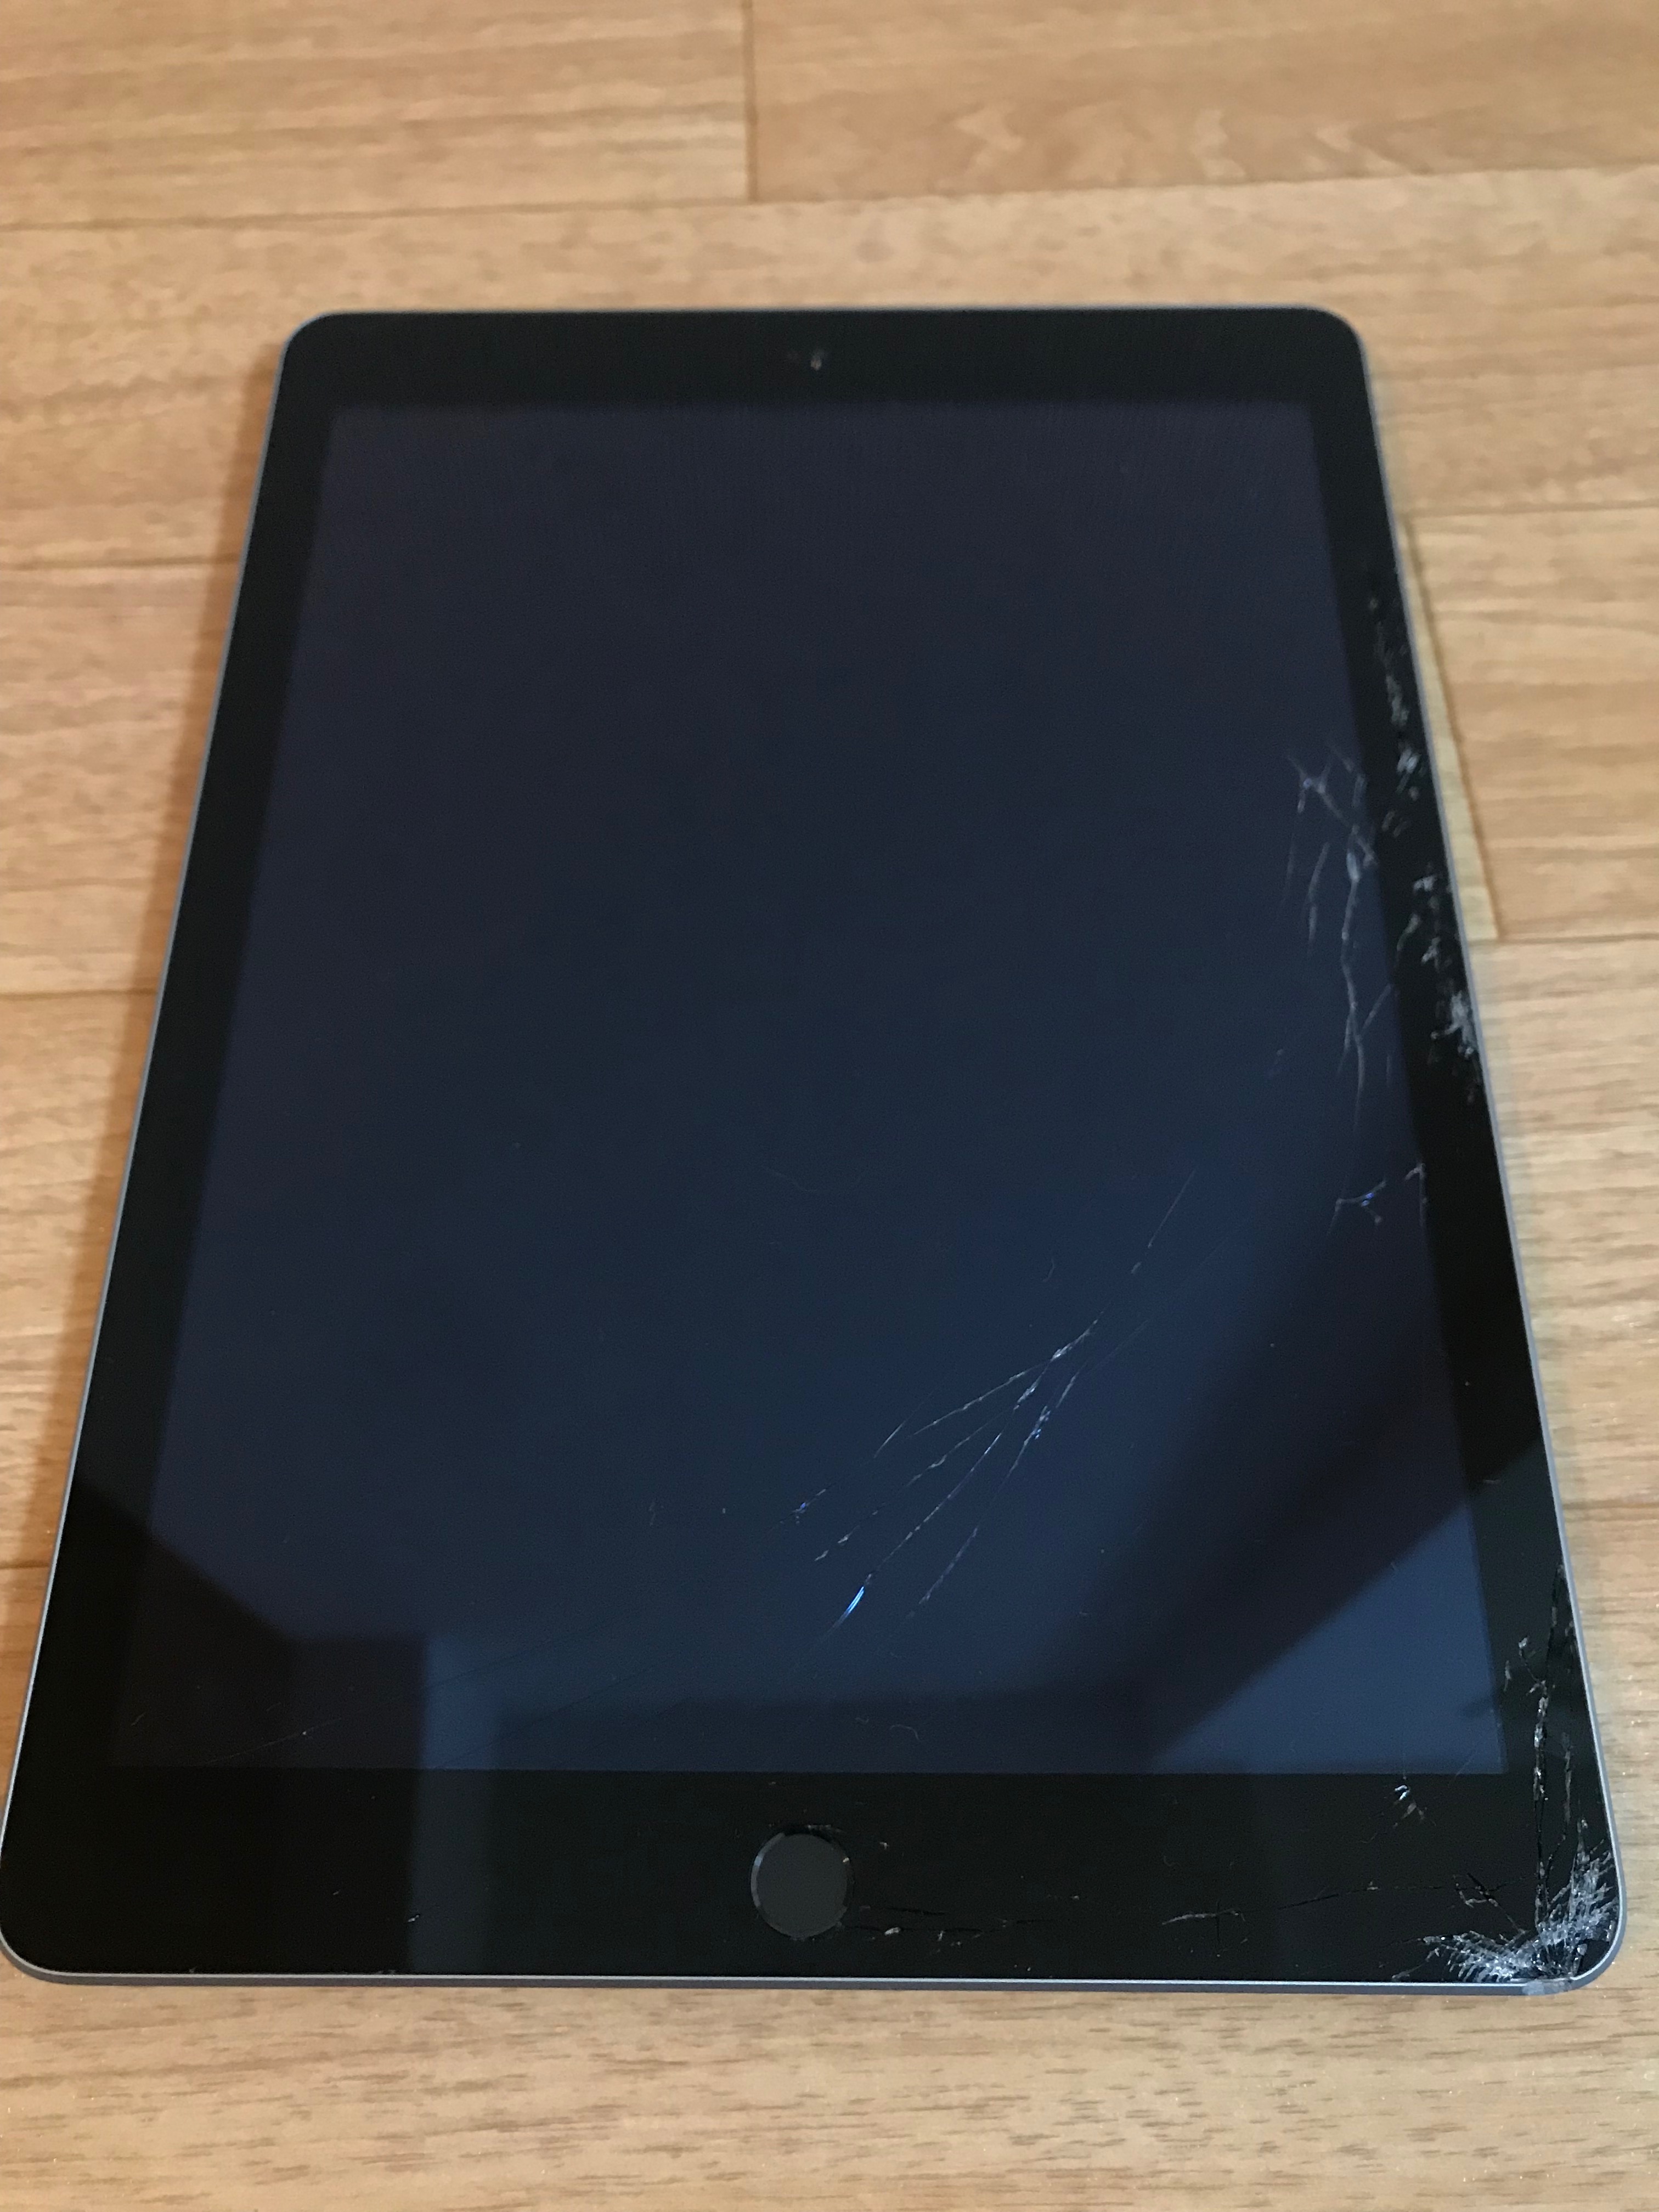 【レビュー】iPad (第 5 世代)を非正規店で修理してみました – DEV-MEMO